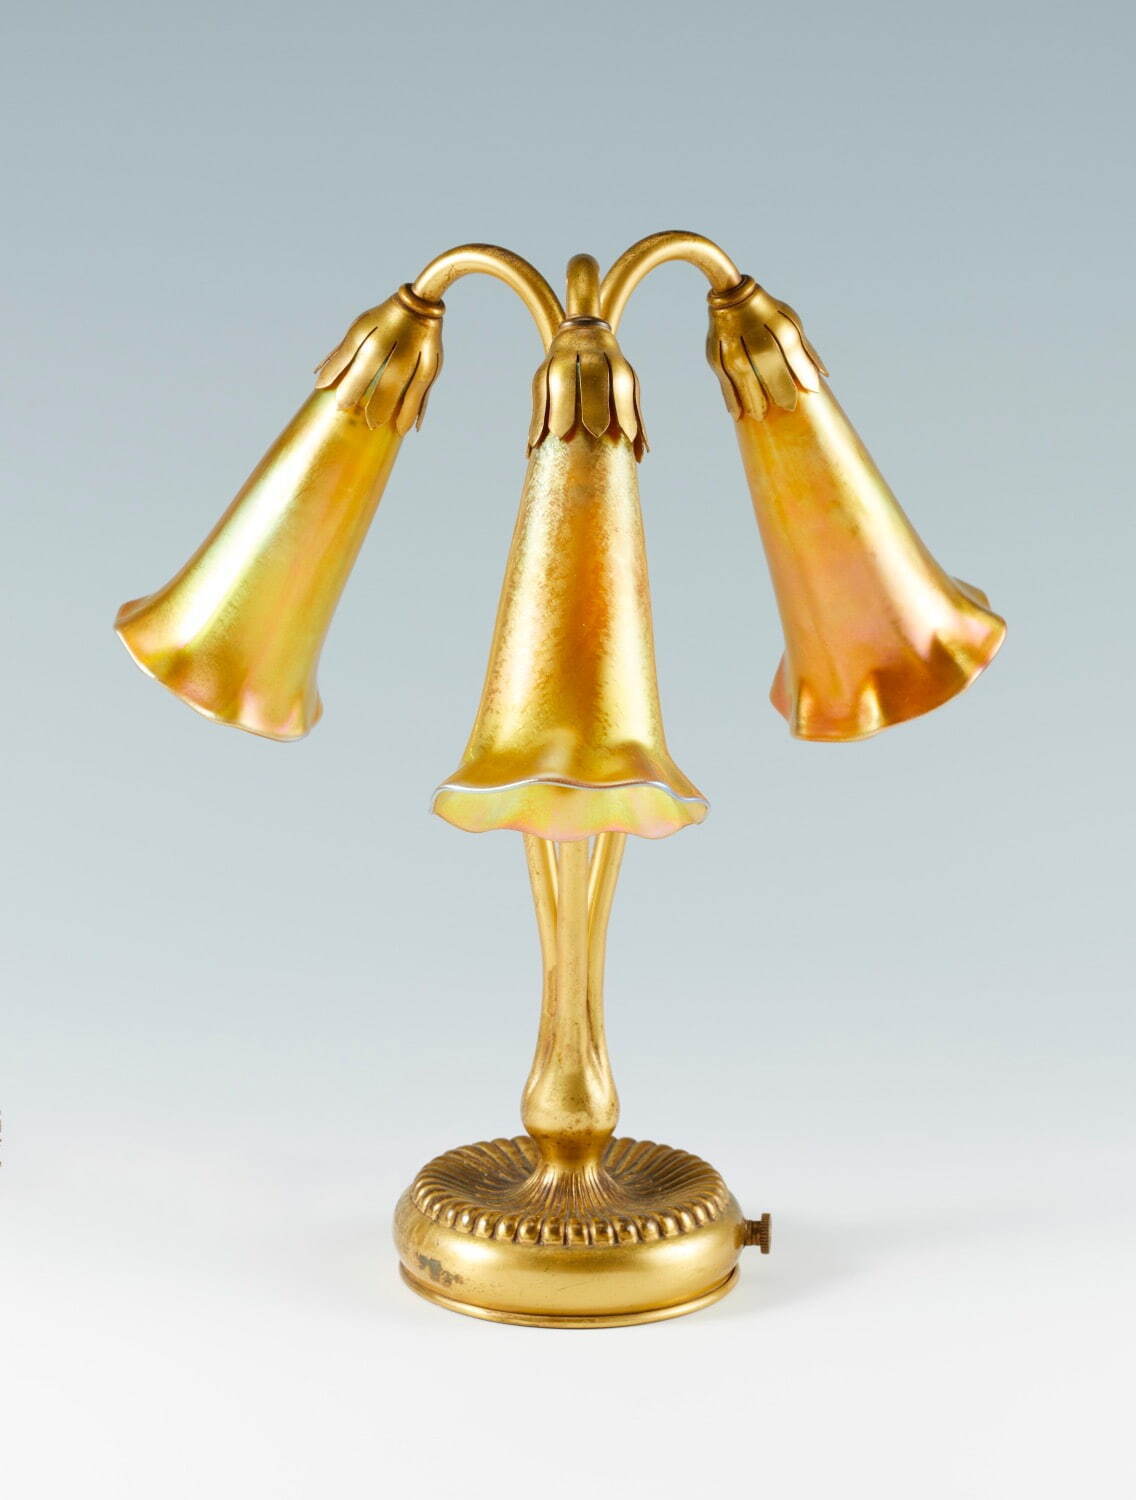 ティファニー・スタジオ 《三輪のリリィの金色ランプ》 1901-25年
Photo ©︎Brain Trust Inc.